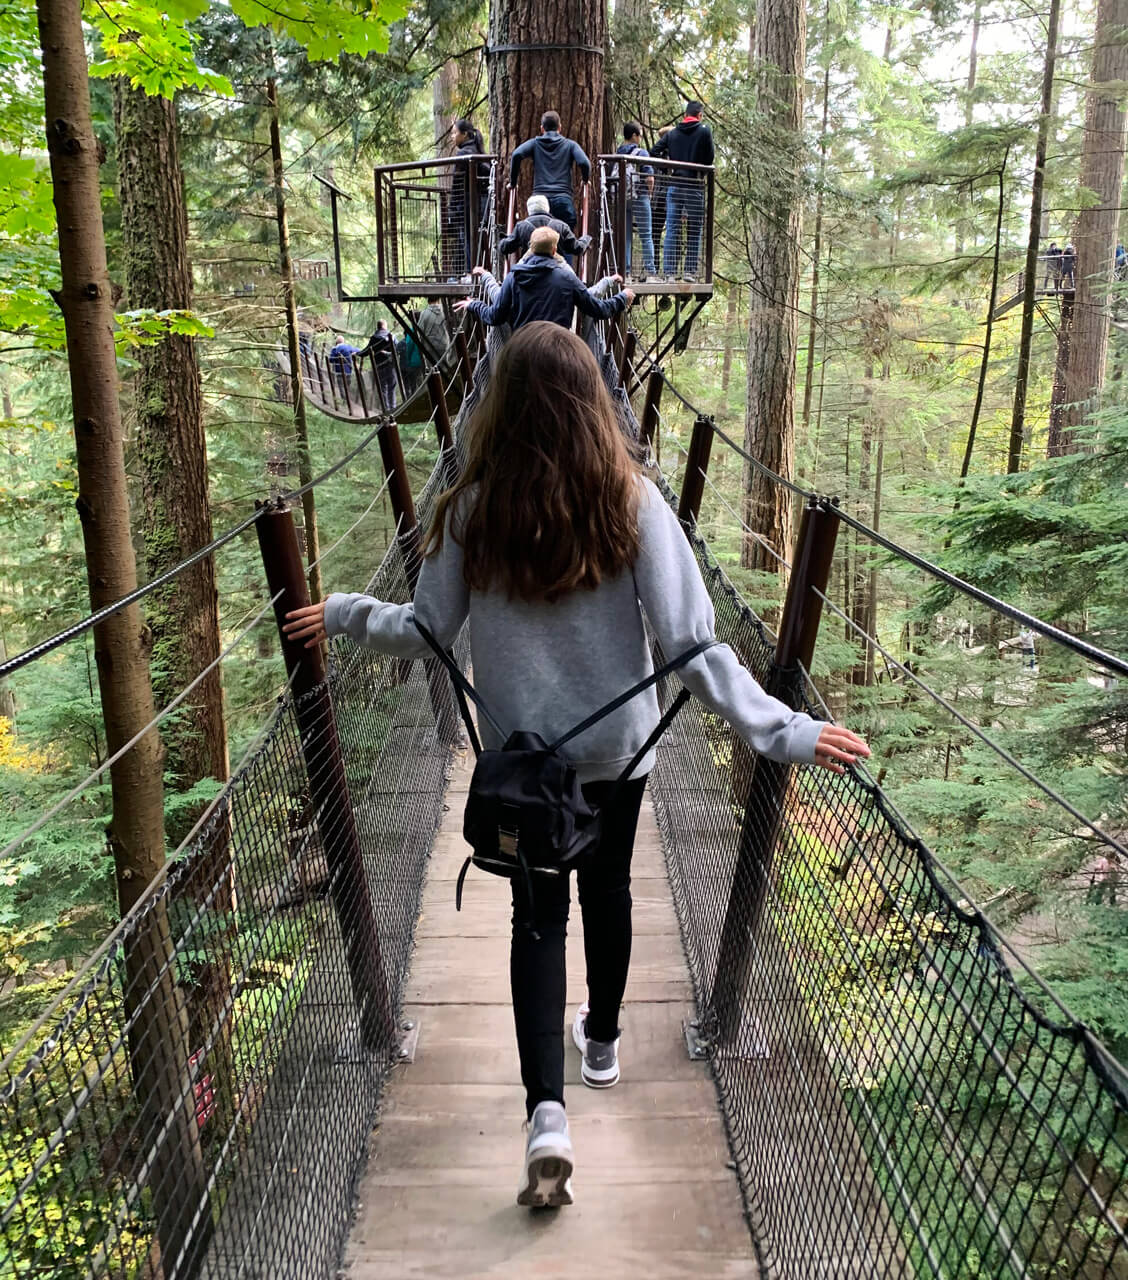 Chica adolescente y otros visitantes, caminando por puente aéreo entre las copas de los árboles